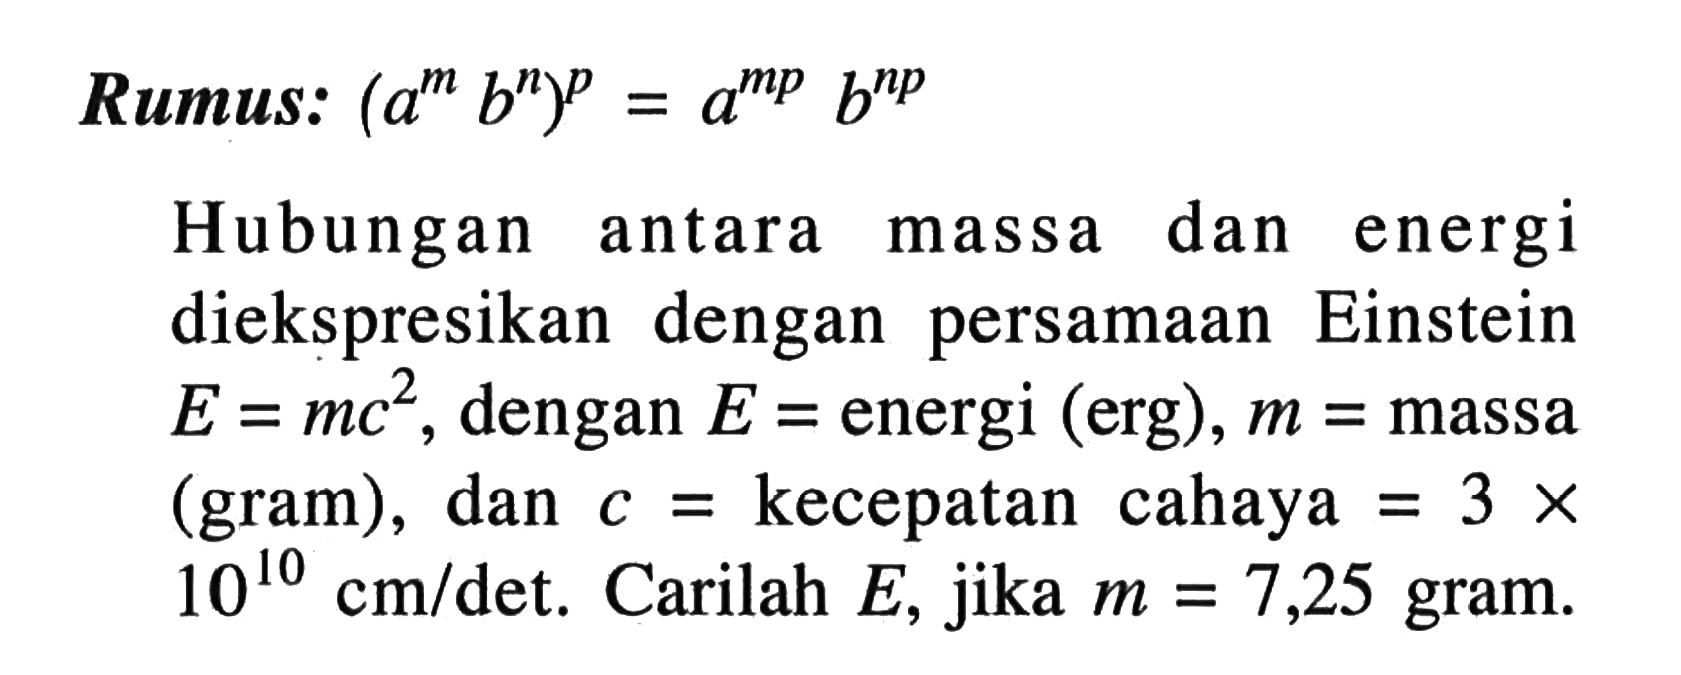 Rumus: (a^m b^n)^p = a^mp b^b^np Hubungan antara dan energi massa diekspresikan dengan persamaan Einstein E = mc^2, dengan E energi (erg), m = massa (gram), dan c = kecepatan cahaya = 3 x 10^10 cm/det. Carilah E, jika m = 7,25 gram.